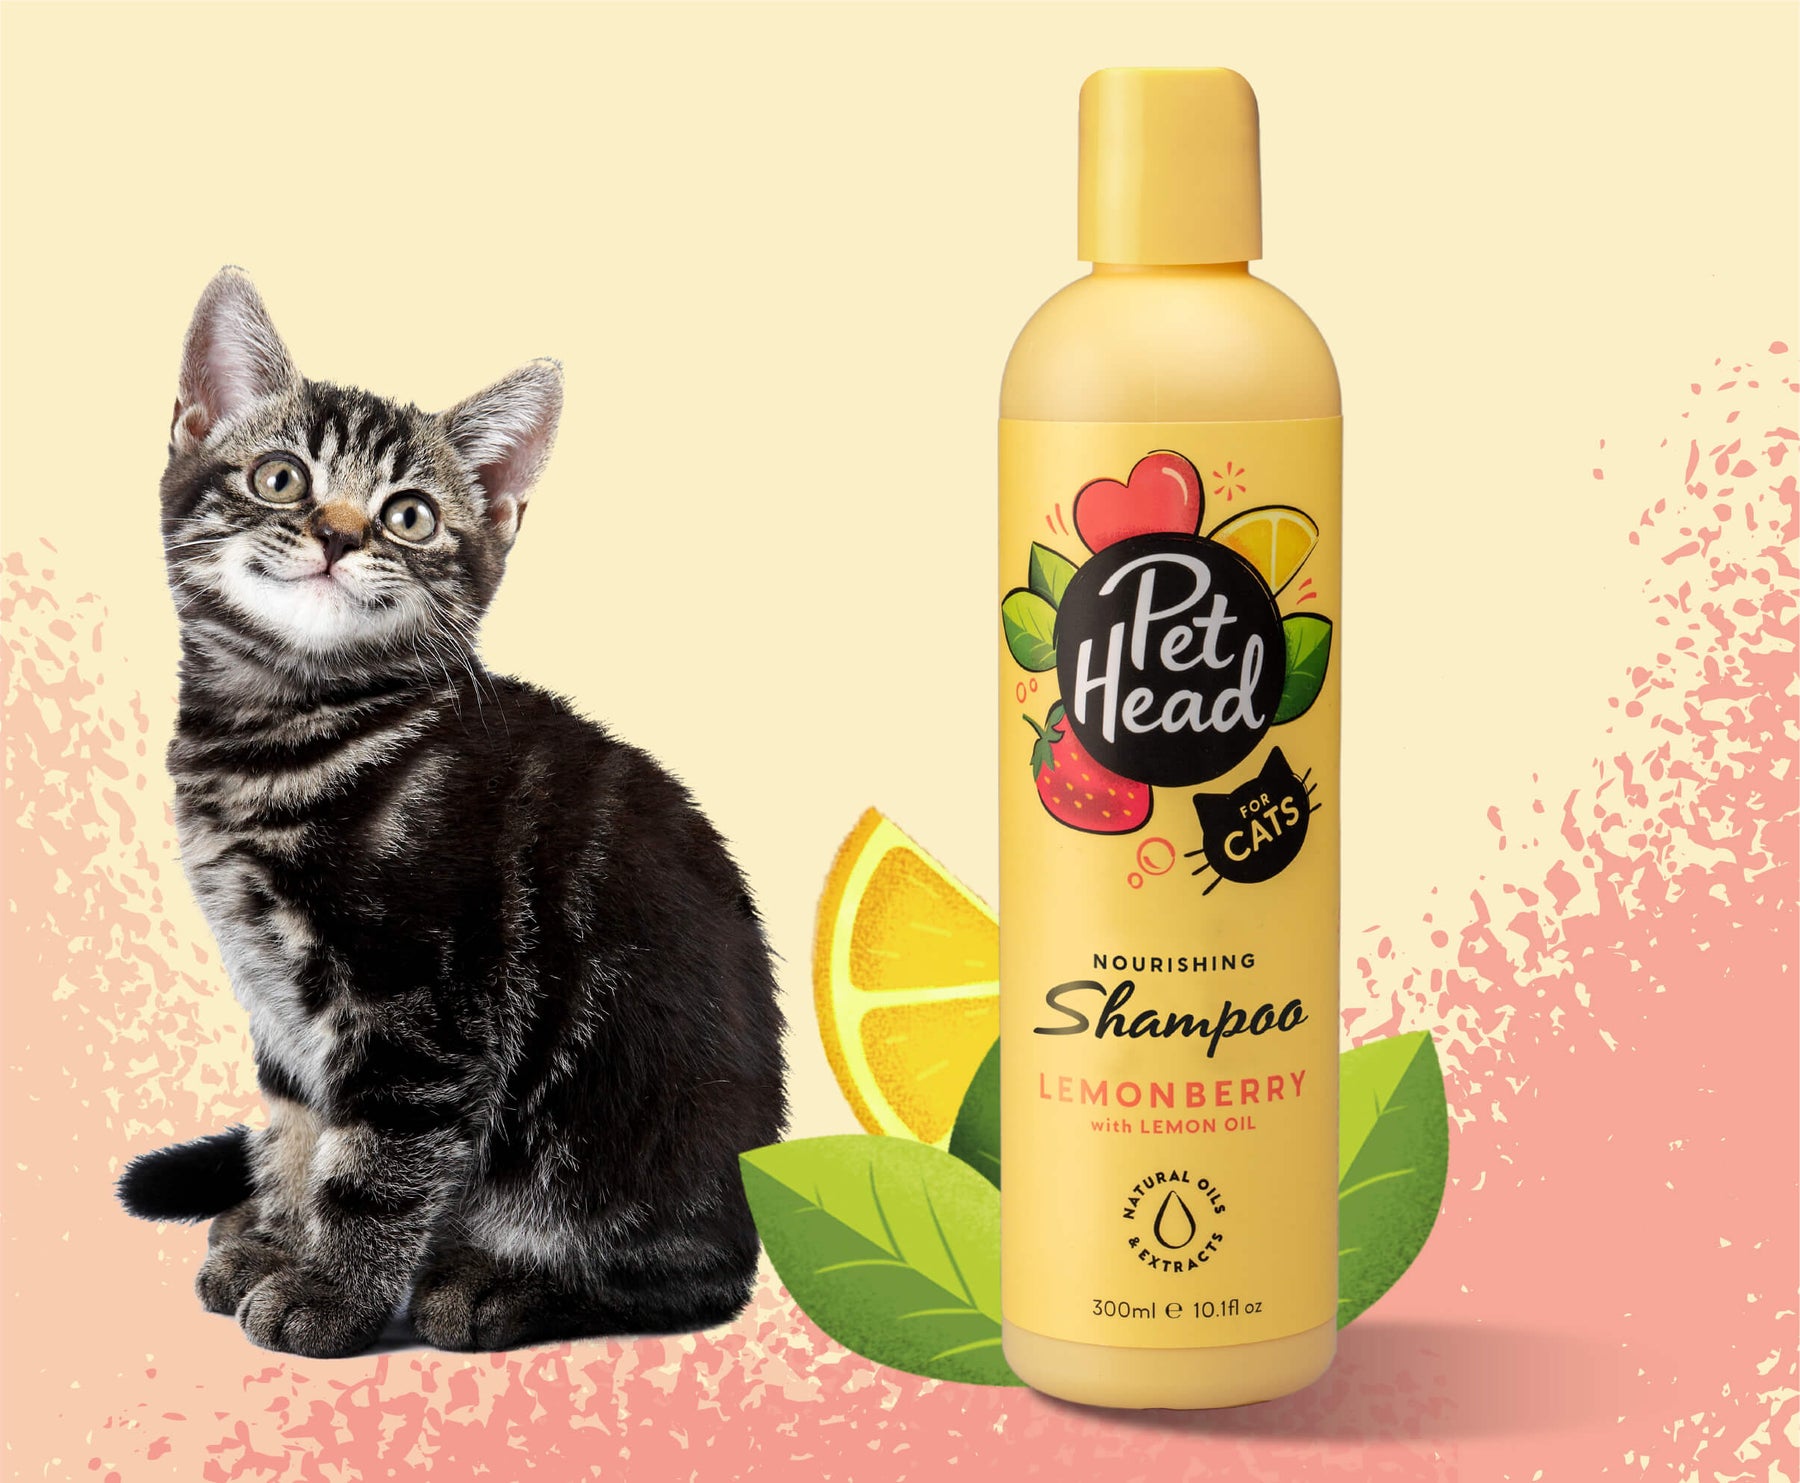 Pet Head Felin' Good Cat Shampoo